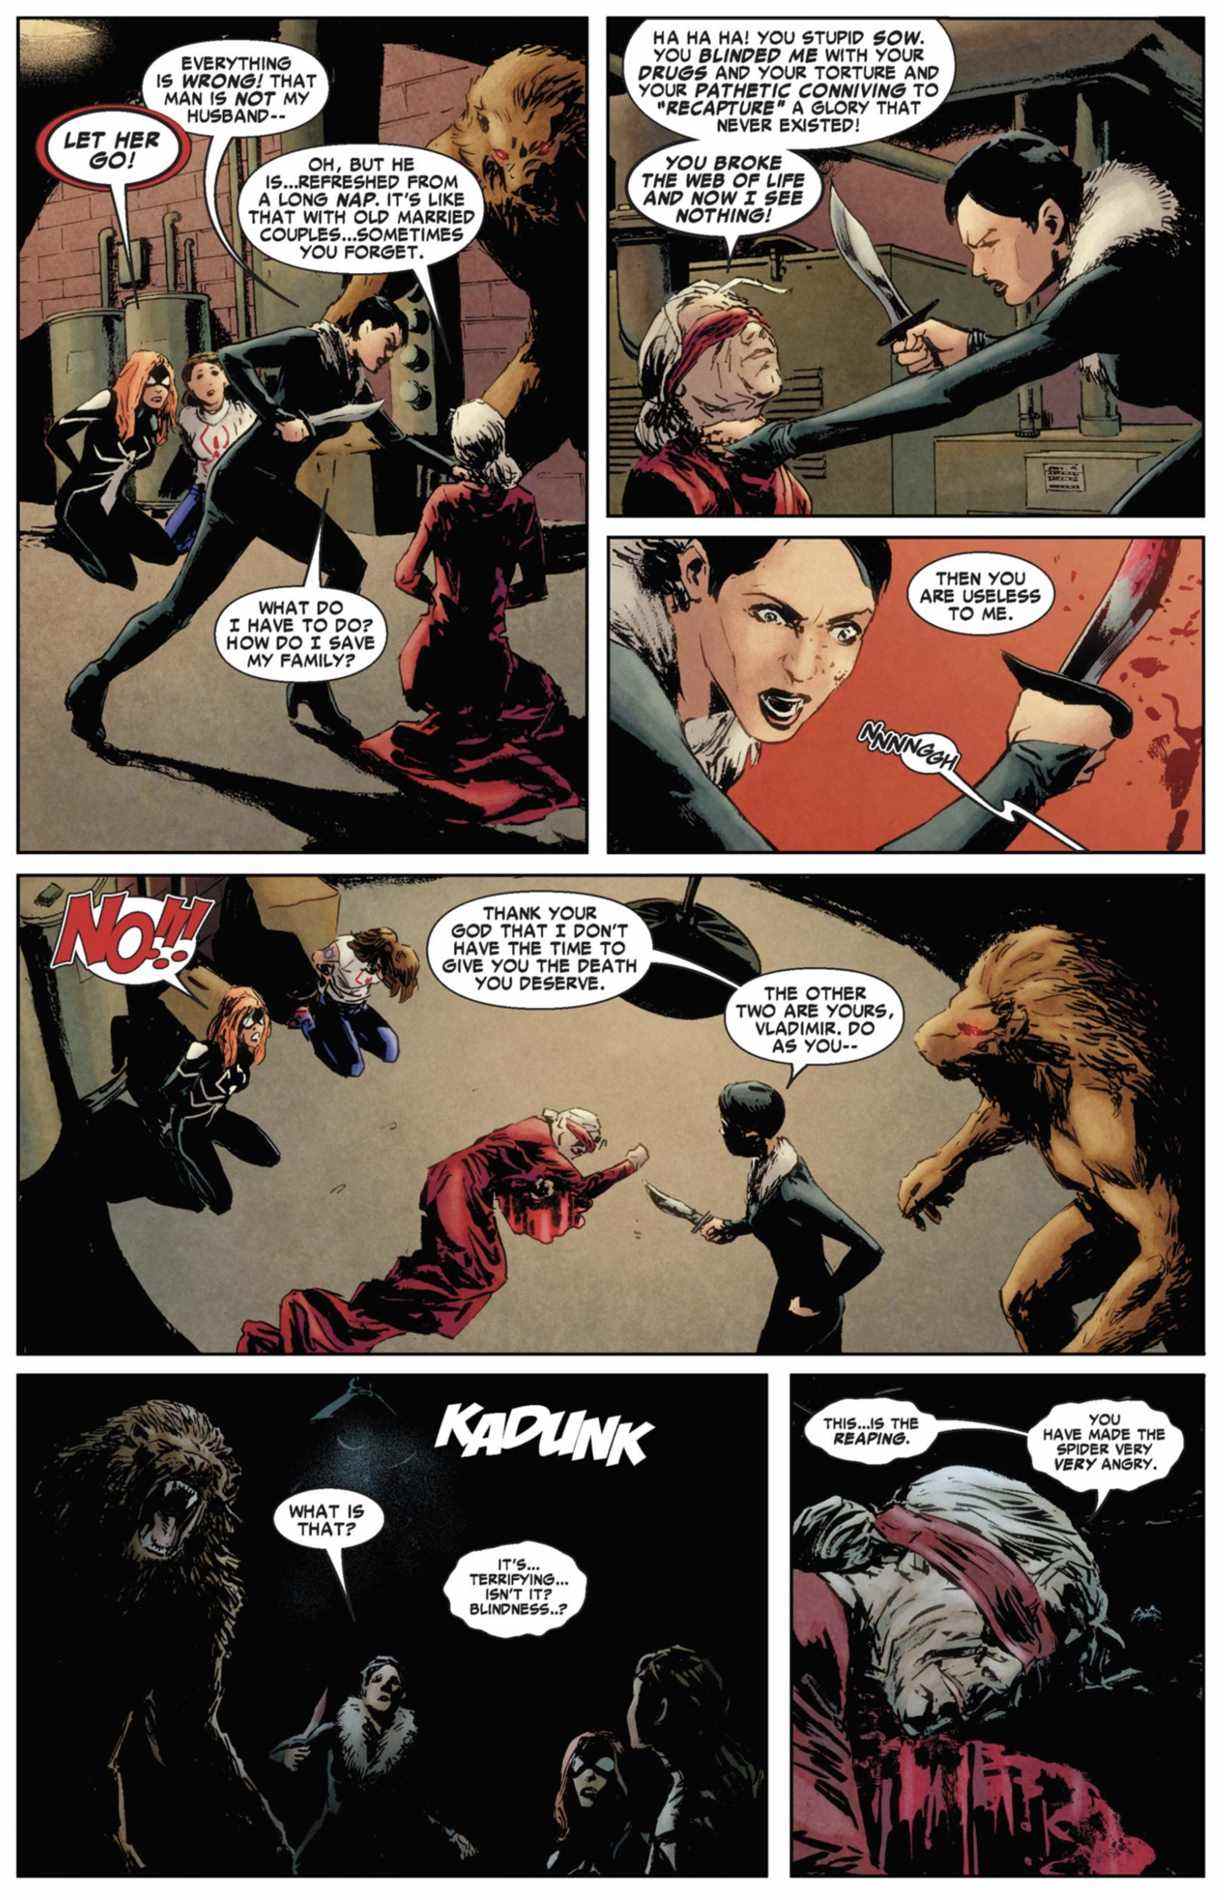 Incroyable page de Spider-Man #637